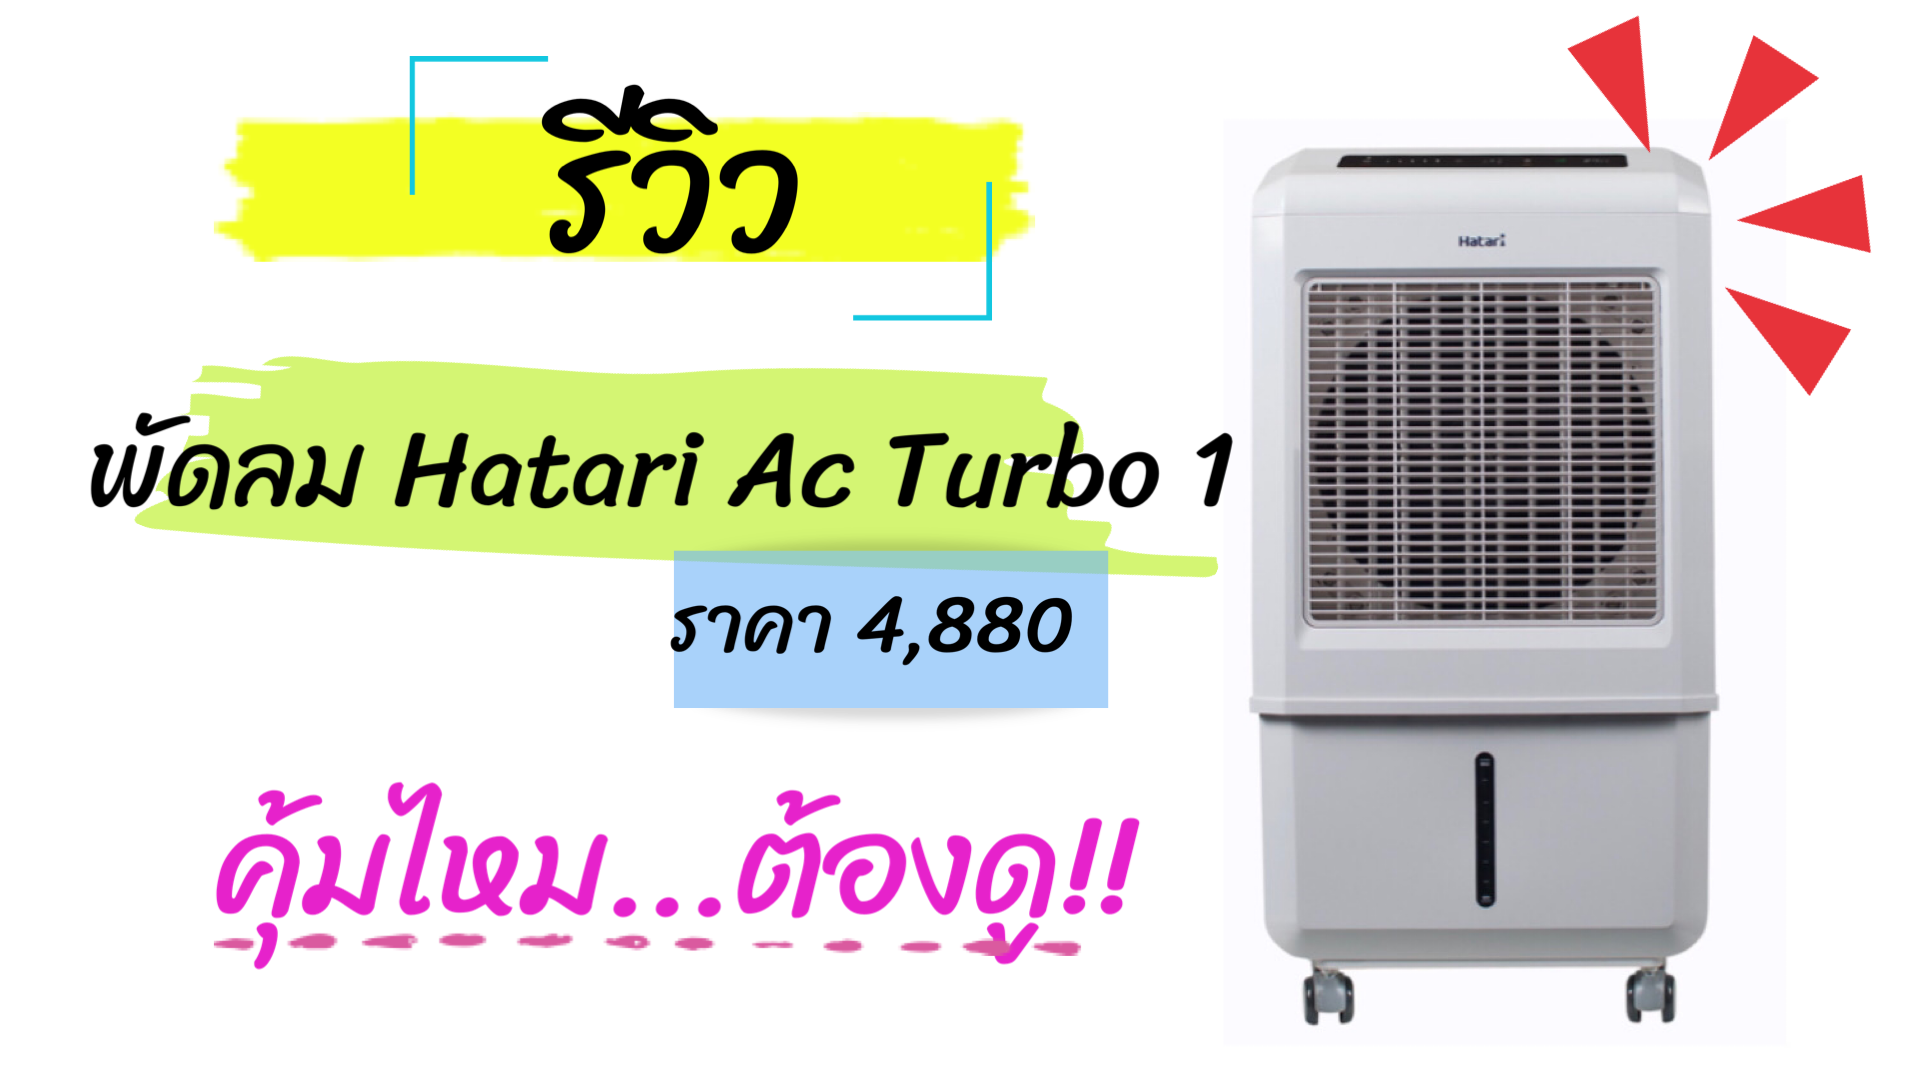 รีวิว ซื้อพัดลมไอเย็น Hatari Ac Turbo1 ในราคา 4,888 บาท คุ้มไหมต้องดู !! |  Trueid Creator